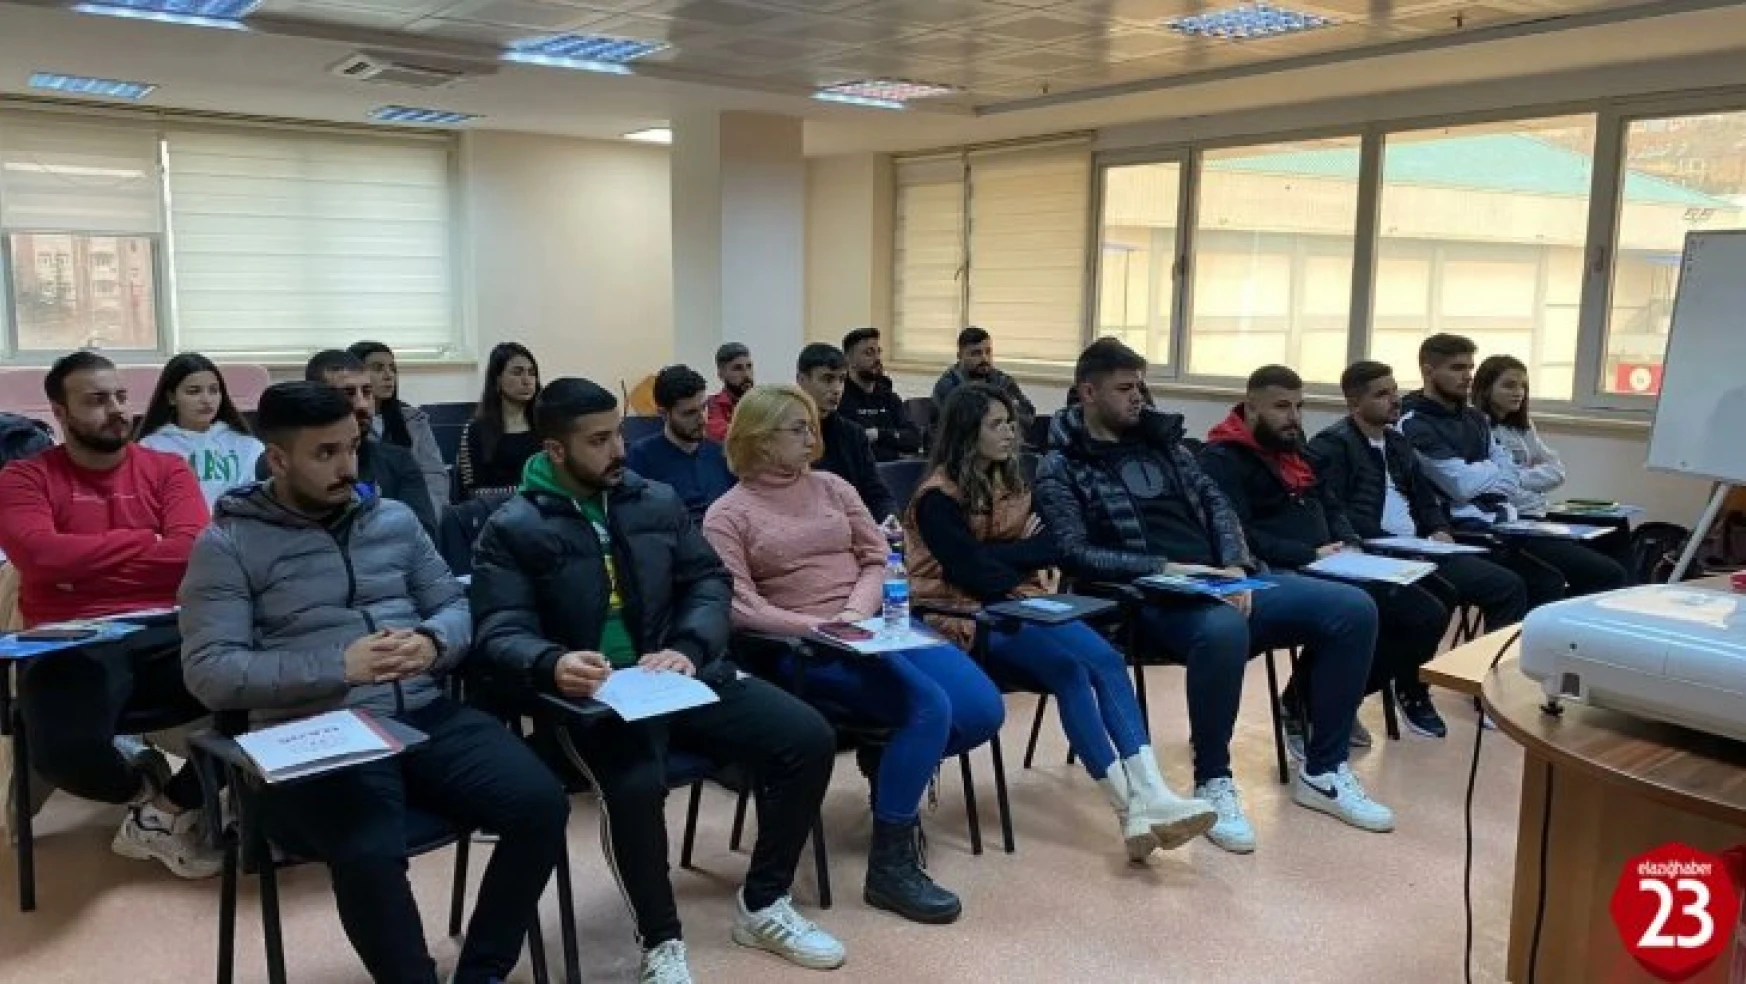 Elazığ'da boks aday hakemlik kursu devam ediyor